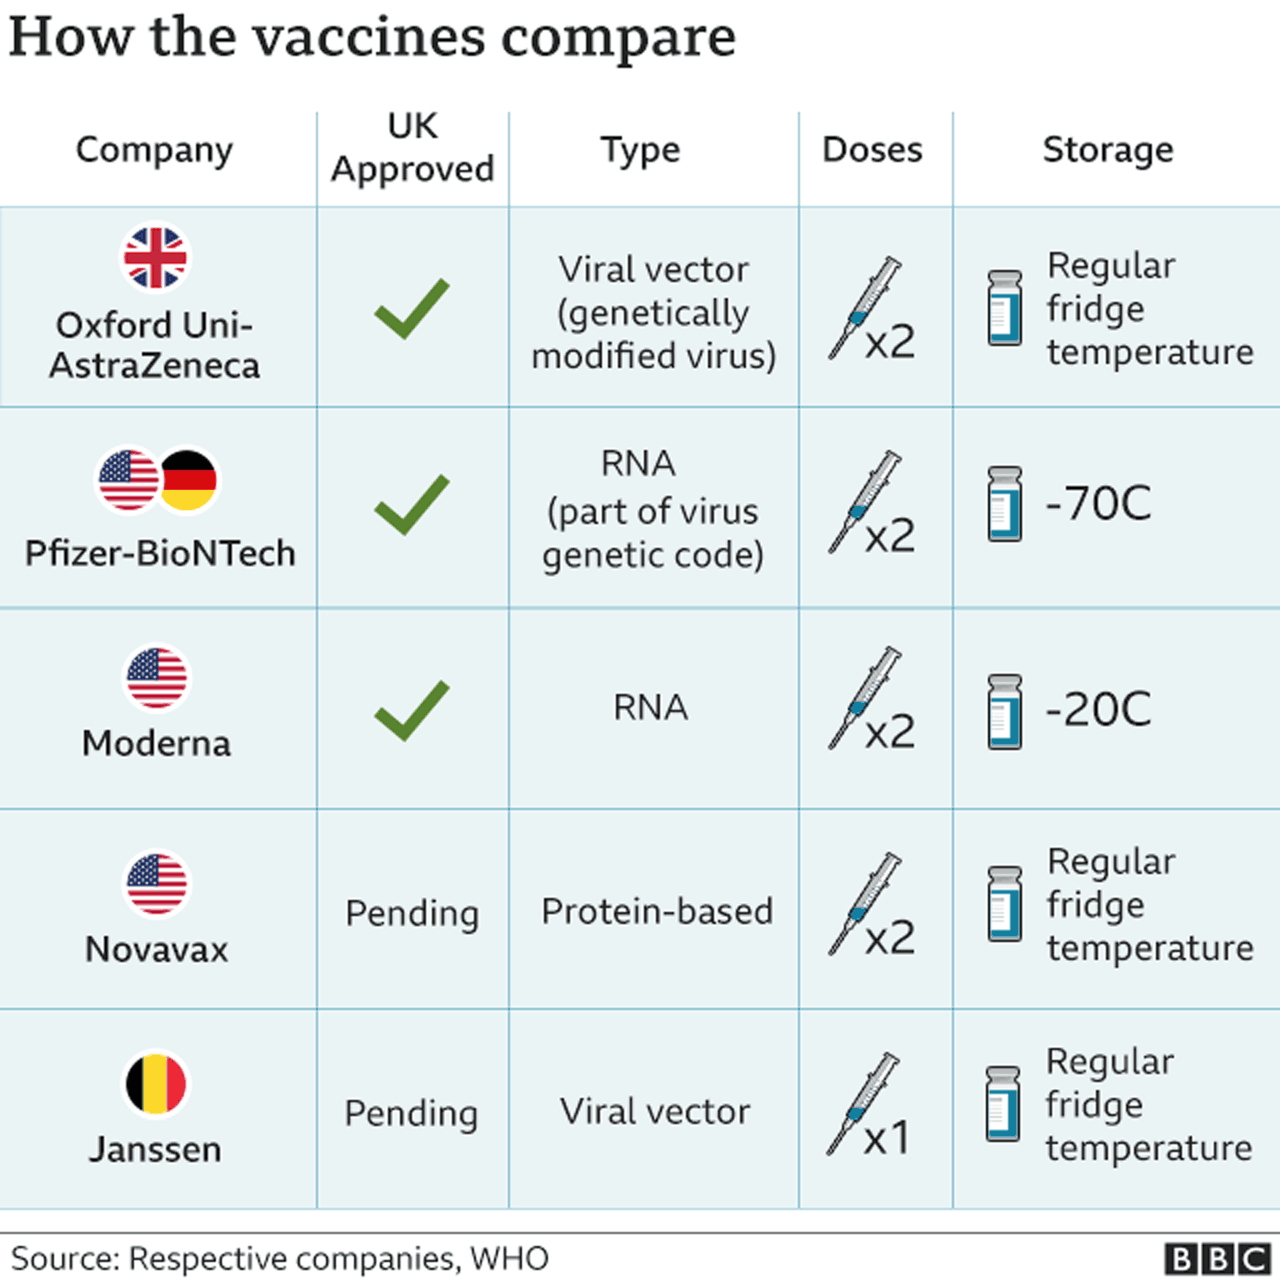 hvordan sammenligner vaksinene?